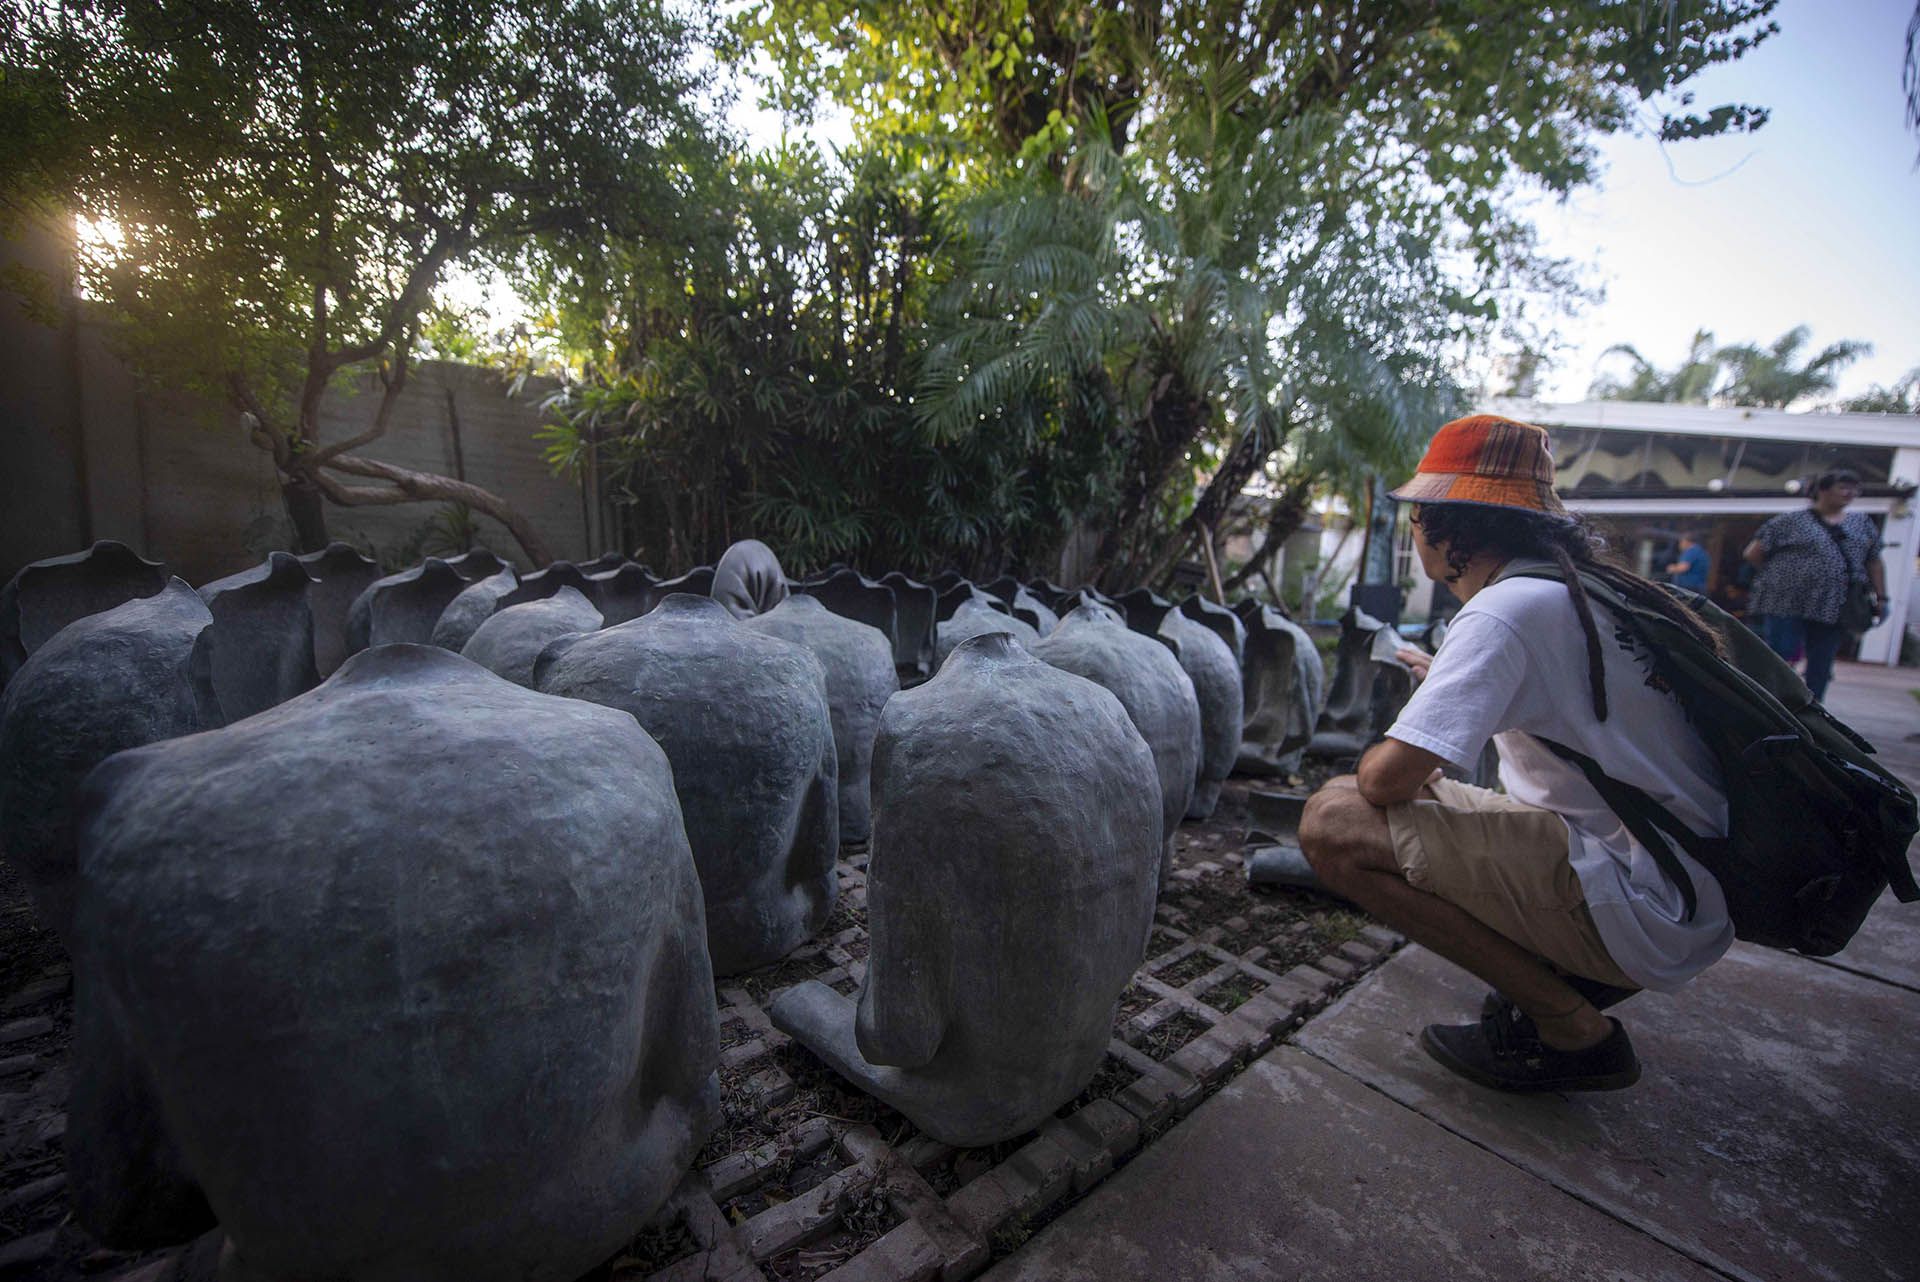  “Desocupados orando”, donde hay una veintena de torsos humanos sentados alrededor de un círculo de mármol fruncido 